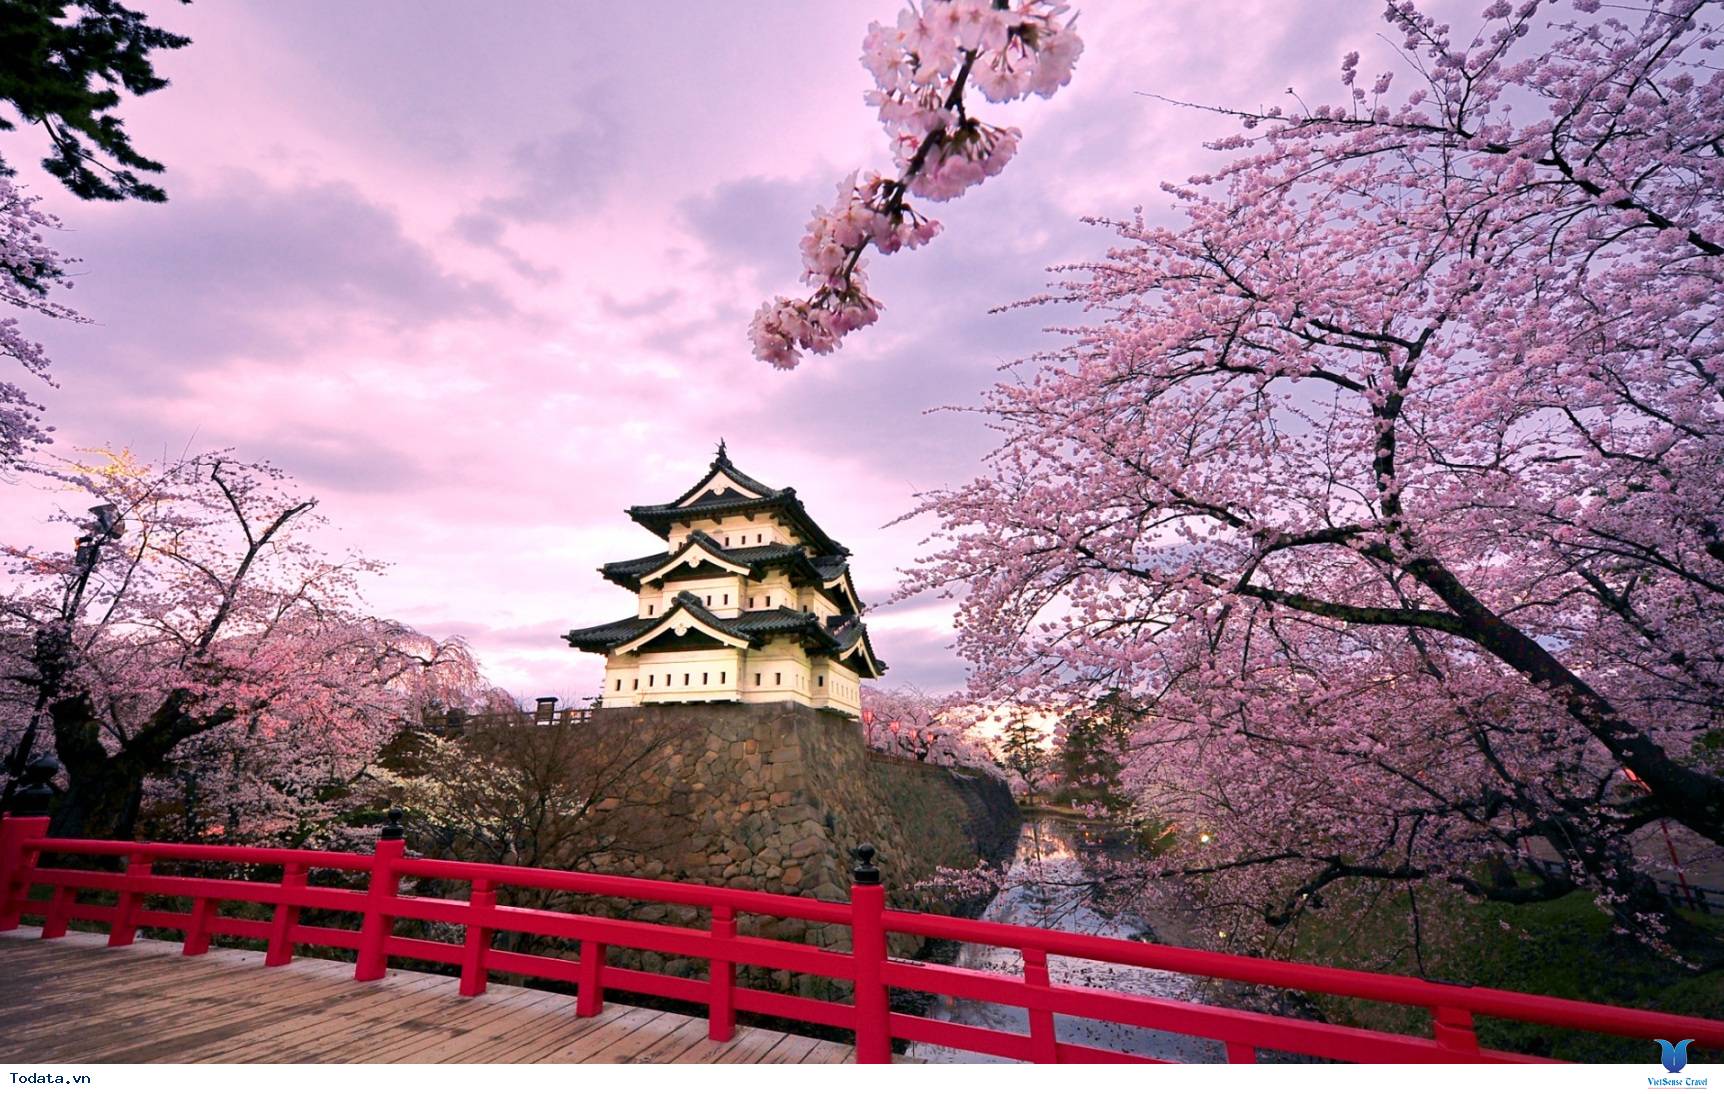 Tại những điểm ngắm hoa anh đào Nhật Bản, bạn sẽ được tận hưởng cảm giác đang lạc vào một thế giới đầy màu sắc và sống động. Hãy tìm đến những địa điểm này để cảm nhận vẻ đẹp của mùa xuân đang bừng sáng.